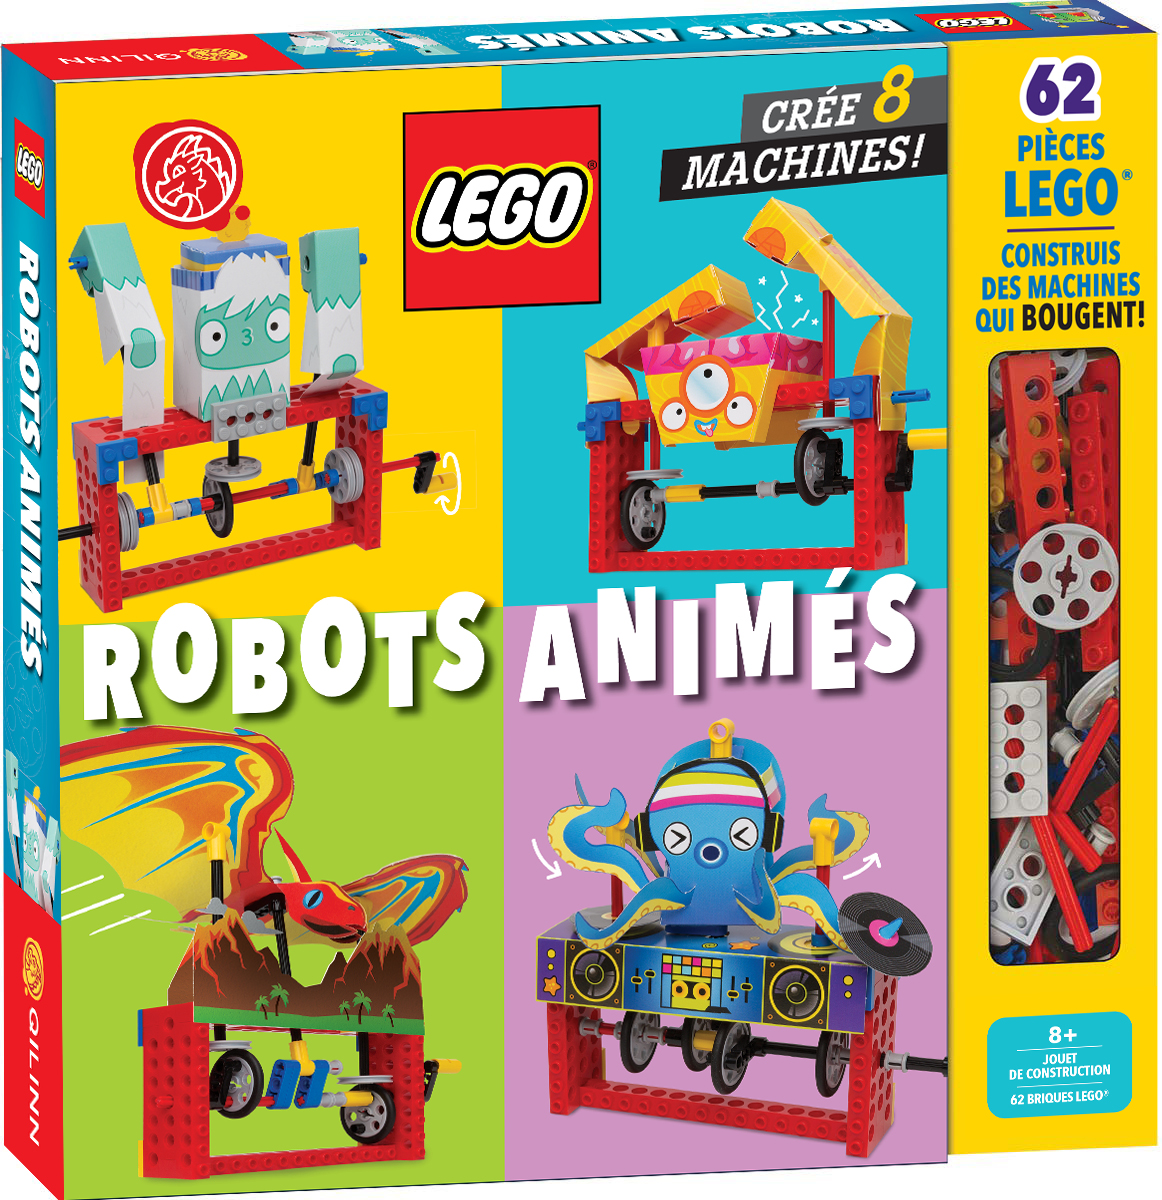 LEGO, Robots animés – LEGO, Robots animés - couv